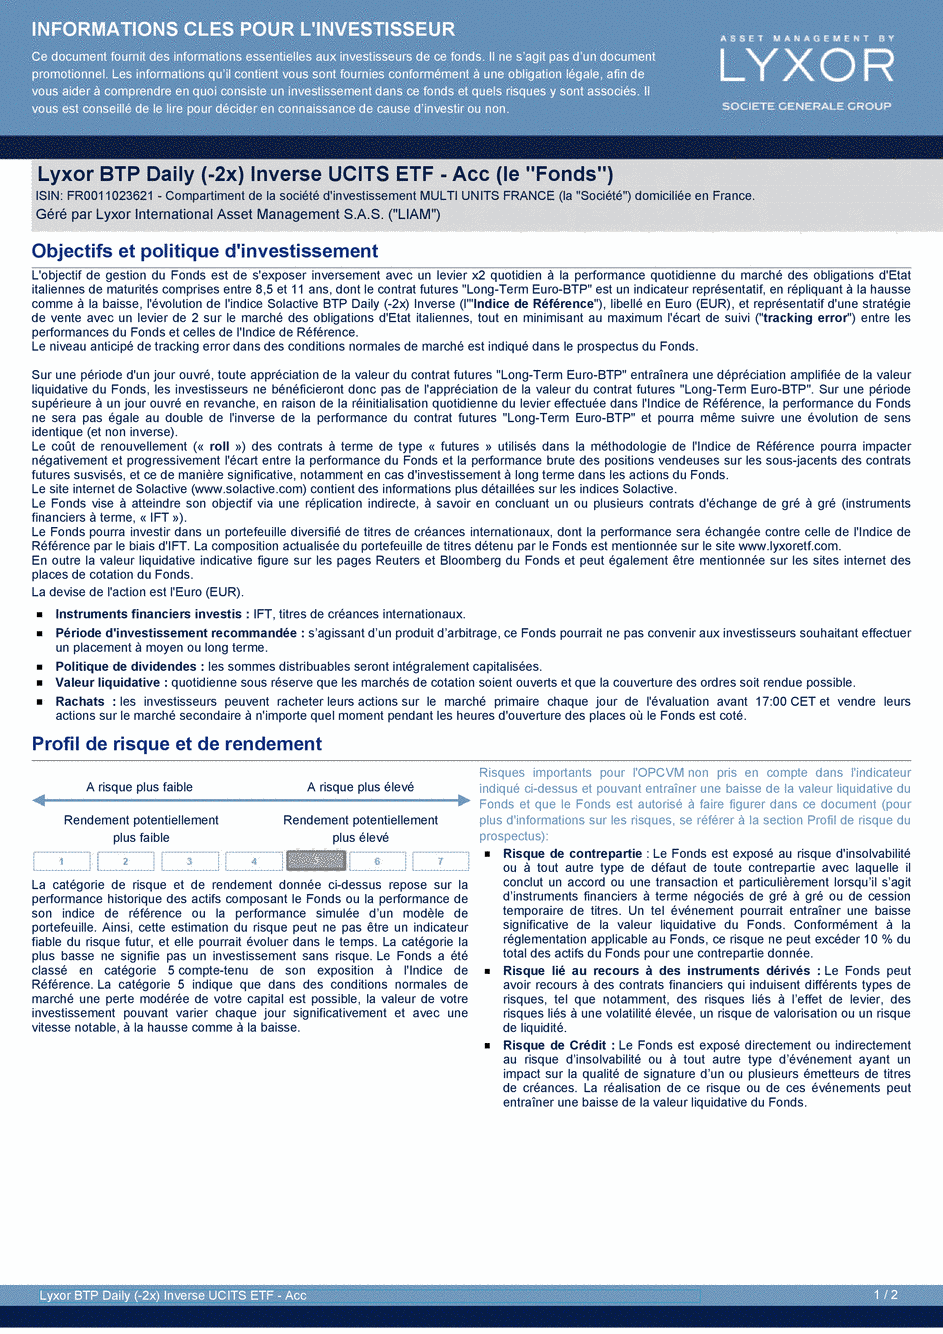 DICI Lyxor BTP Daily (-2x) Inverse UCITS ETF - Acc - 21/06/2019 - Français